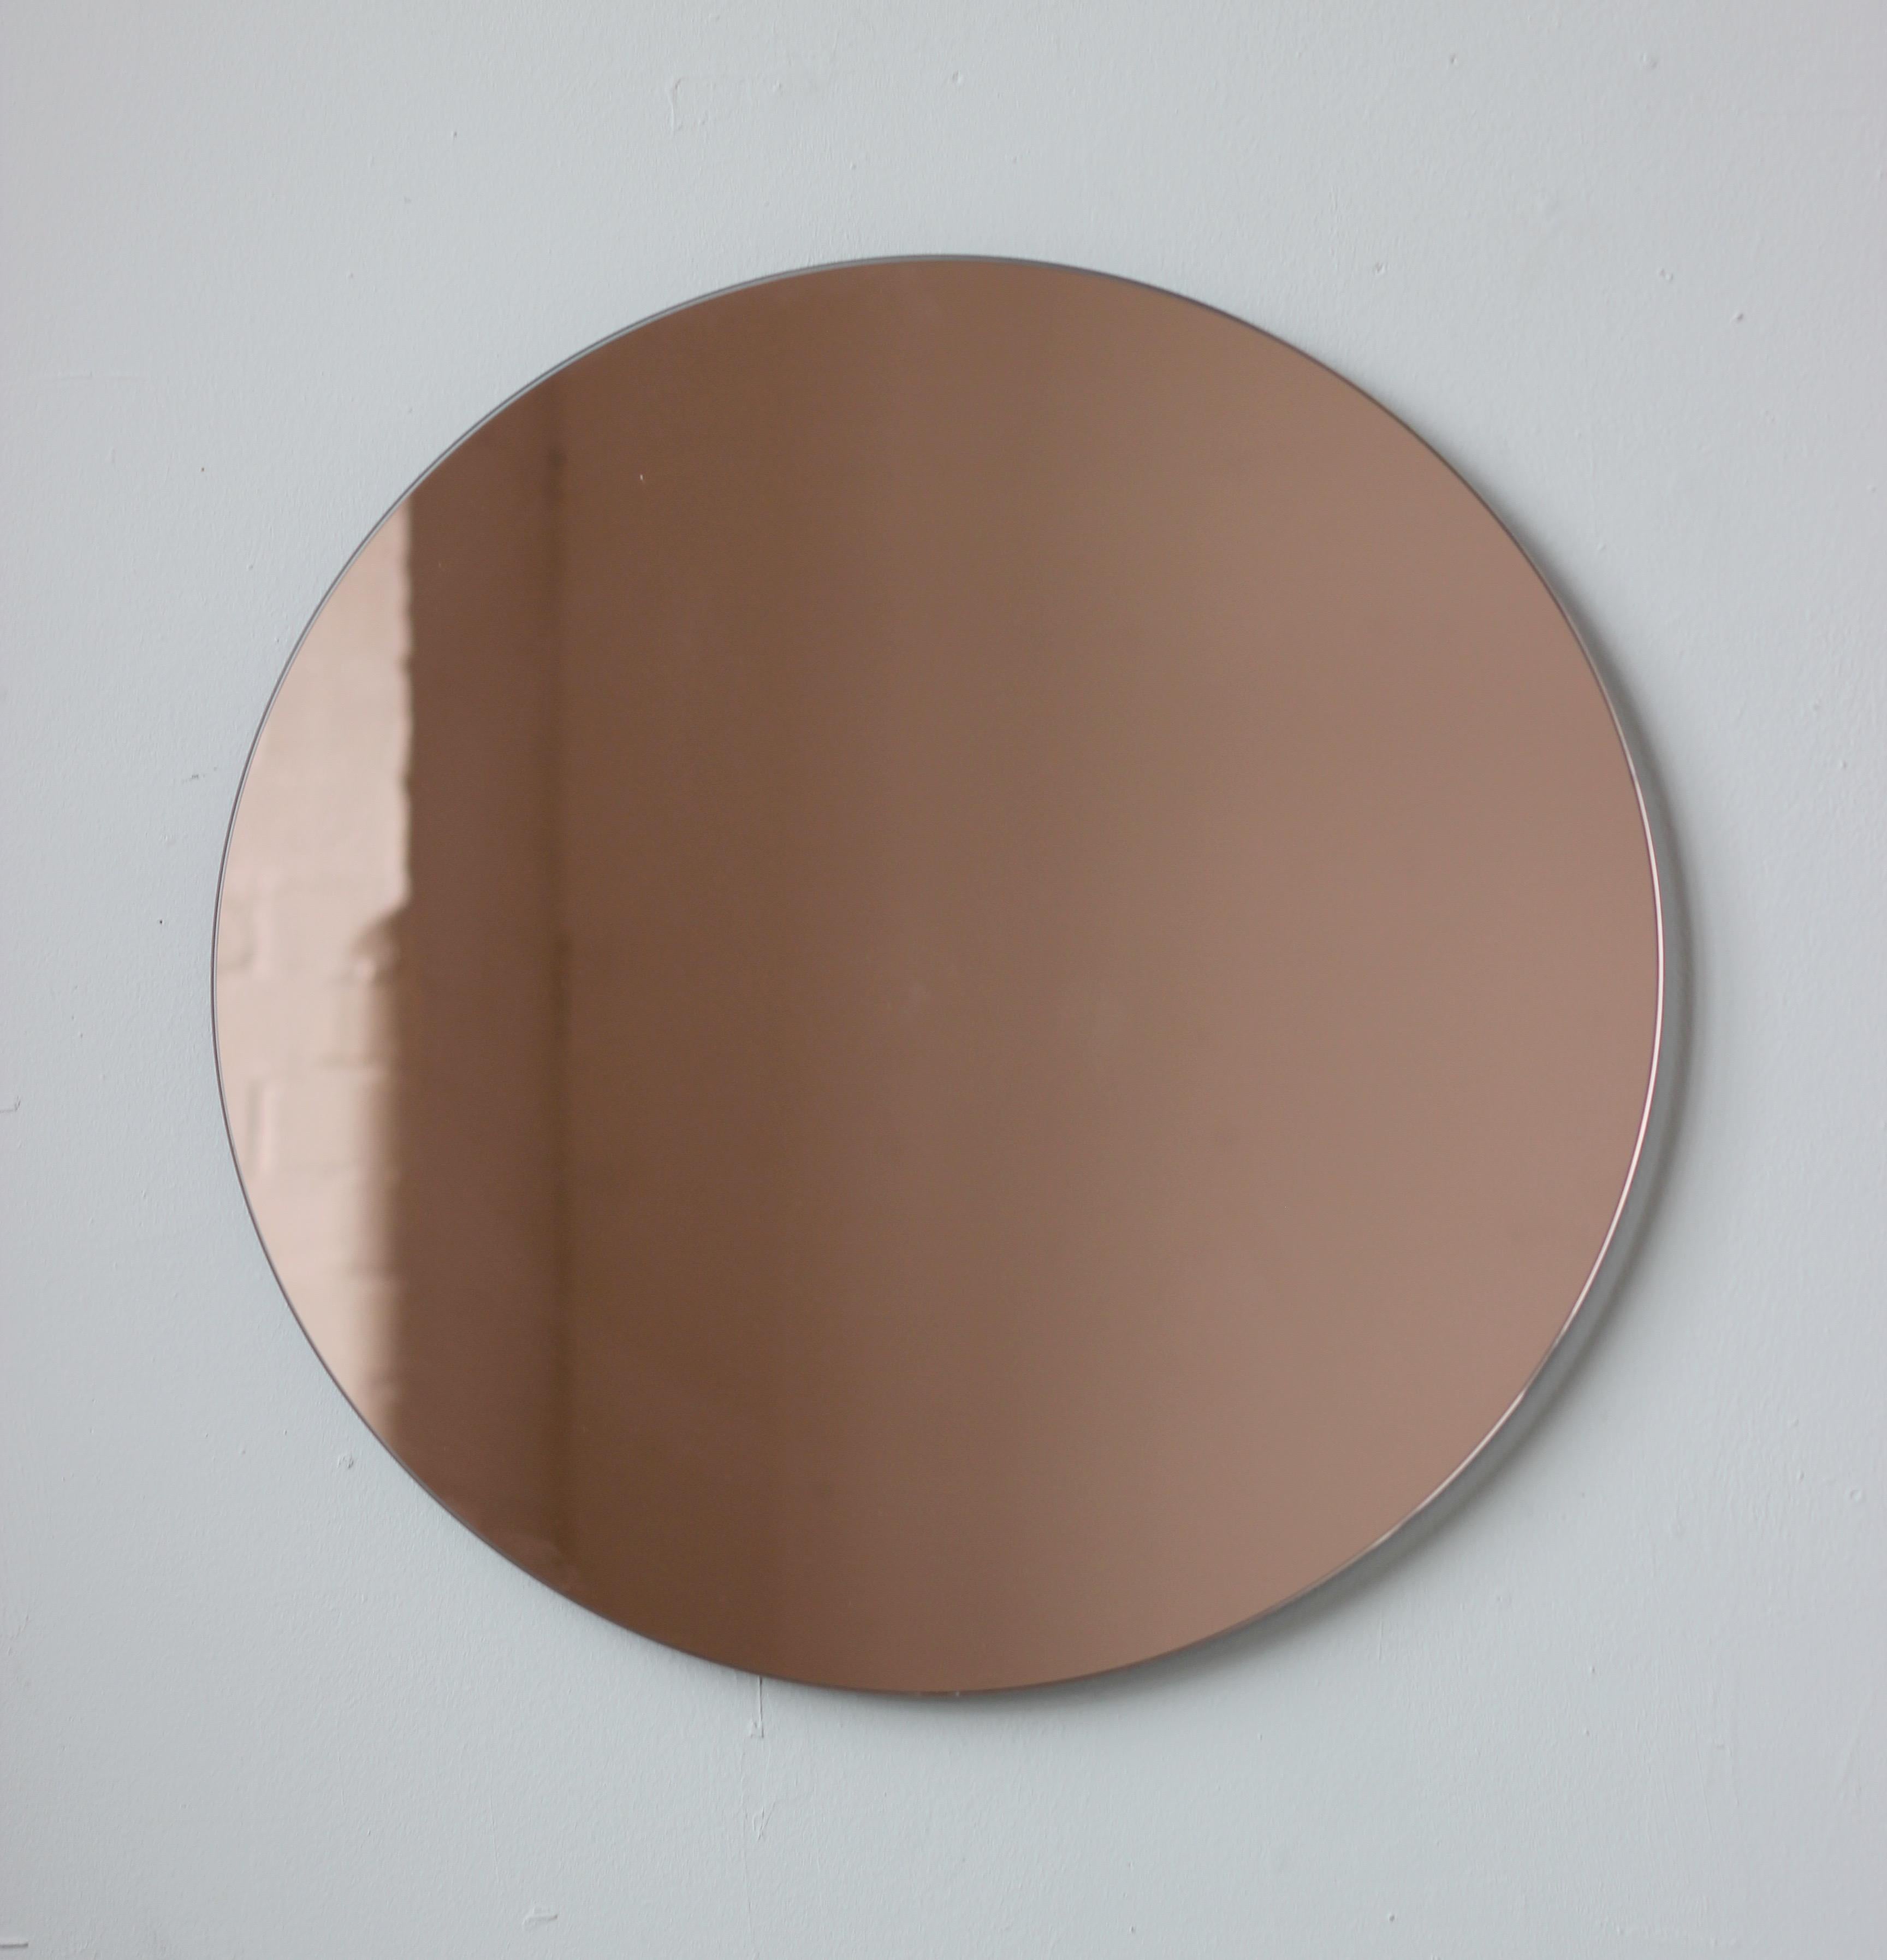 Miroir rond sans cadre, charmant et minimaliste, teinté or rose/pêche, à effet flottant. Un design de qualité qui garantit que le miroir est parfaitement parallèle au mur. Conçu et fabriqué à Londres, au Royaume-Uni.

Equipé de plaques